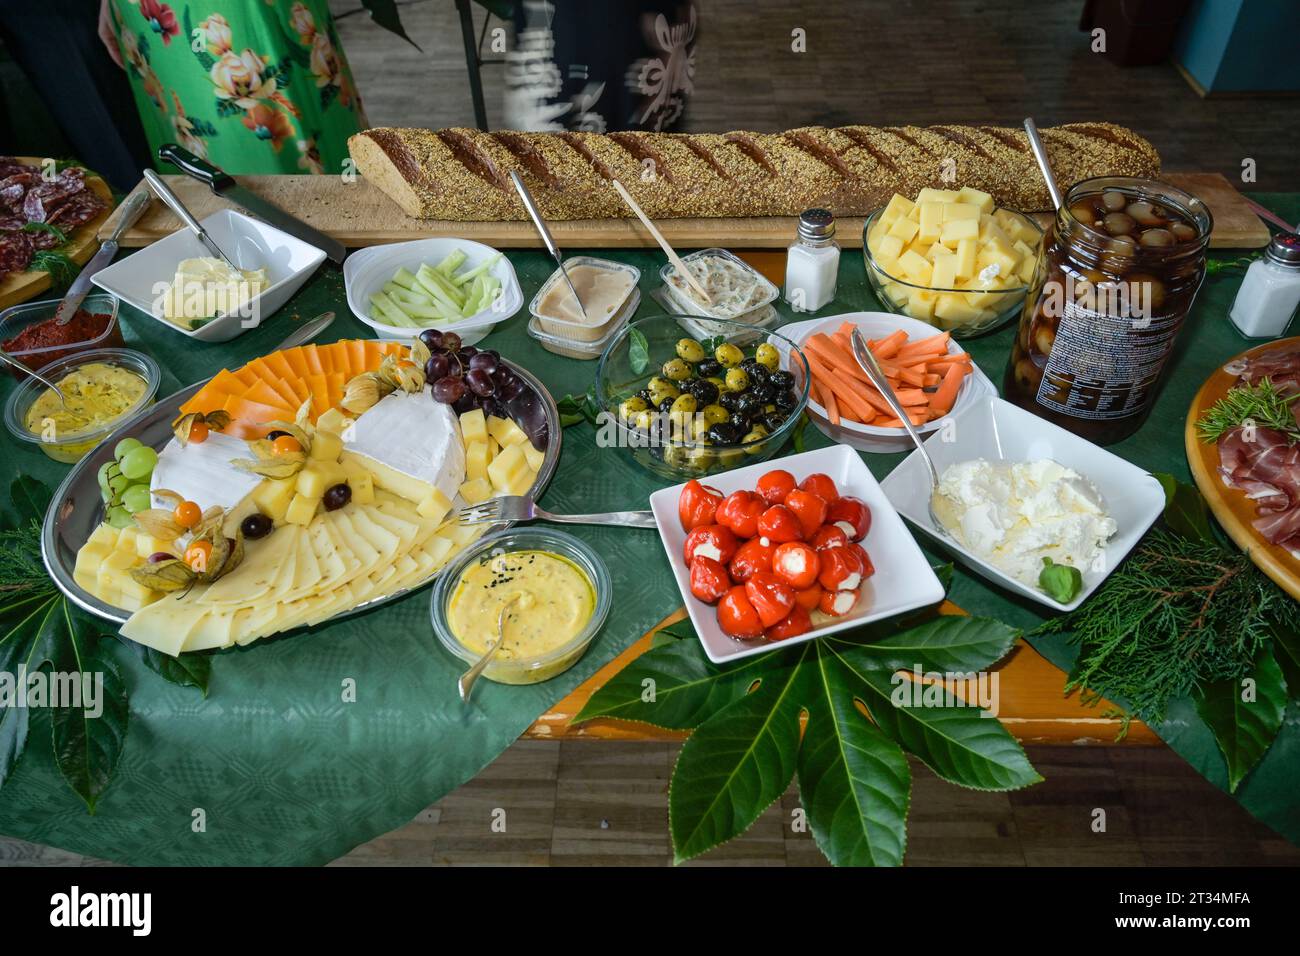 Kaltes buffet mit Käse und Spezialitäten, Deutschland Foto Stock